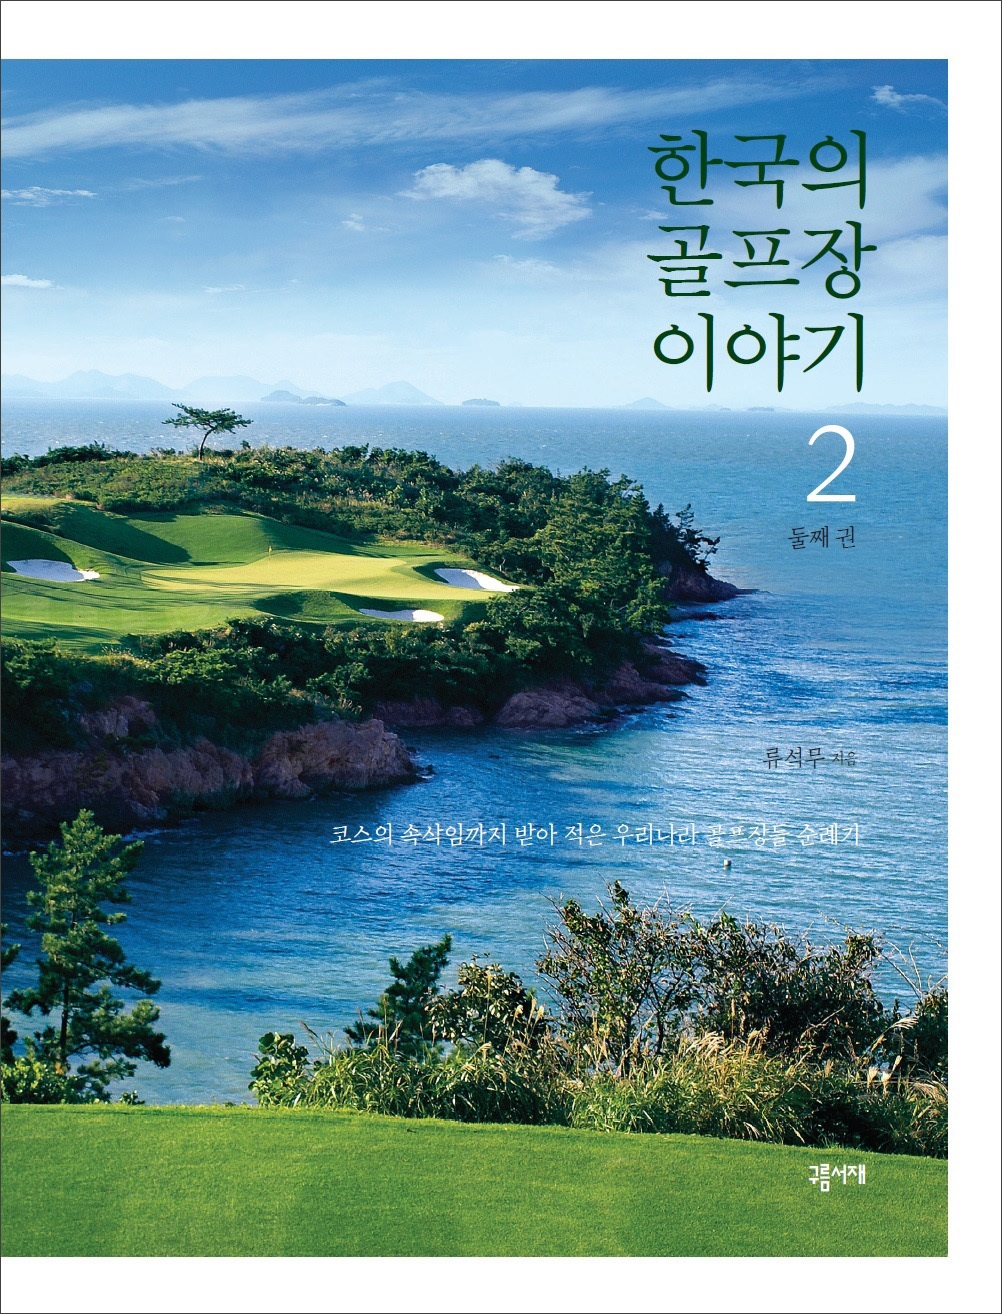 한국의 골프장 이야기. 2: 코스의 속삭임까지 받아 적은 우리나라 골프장들 순례기